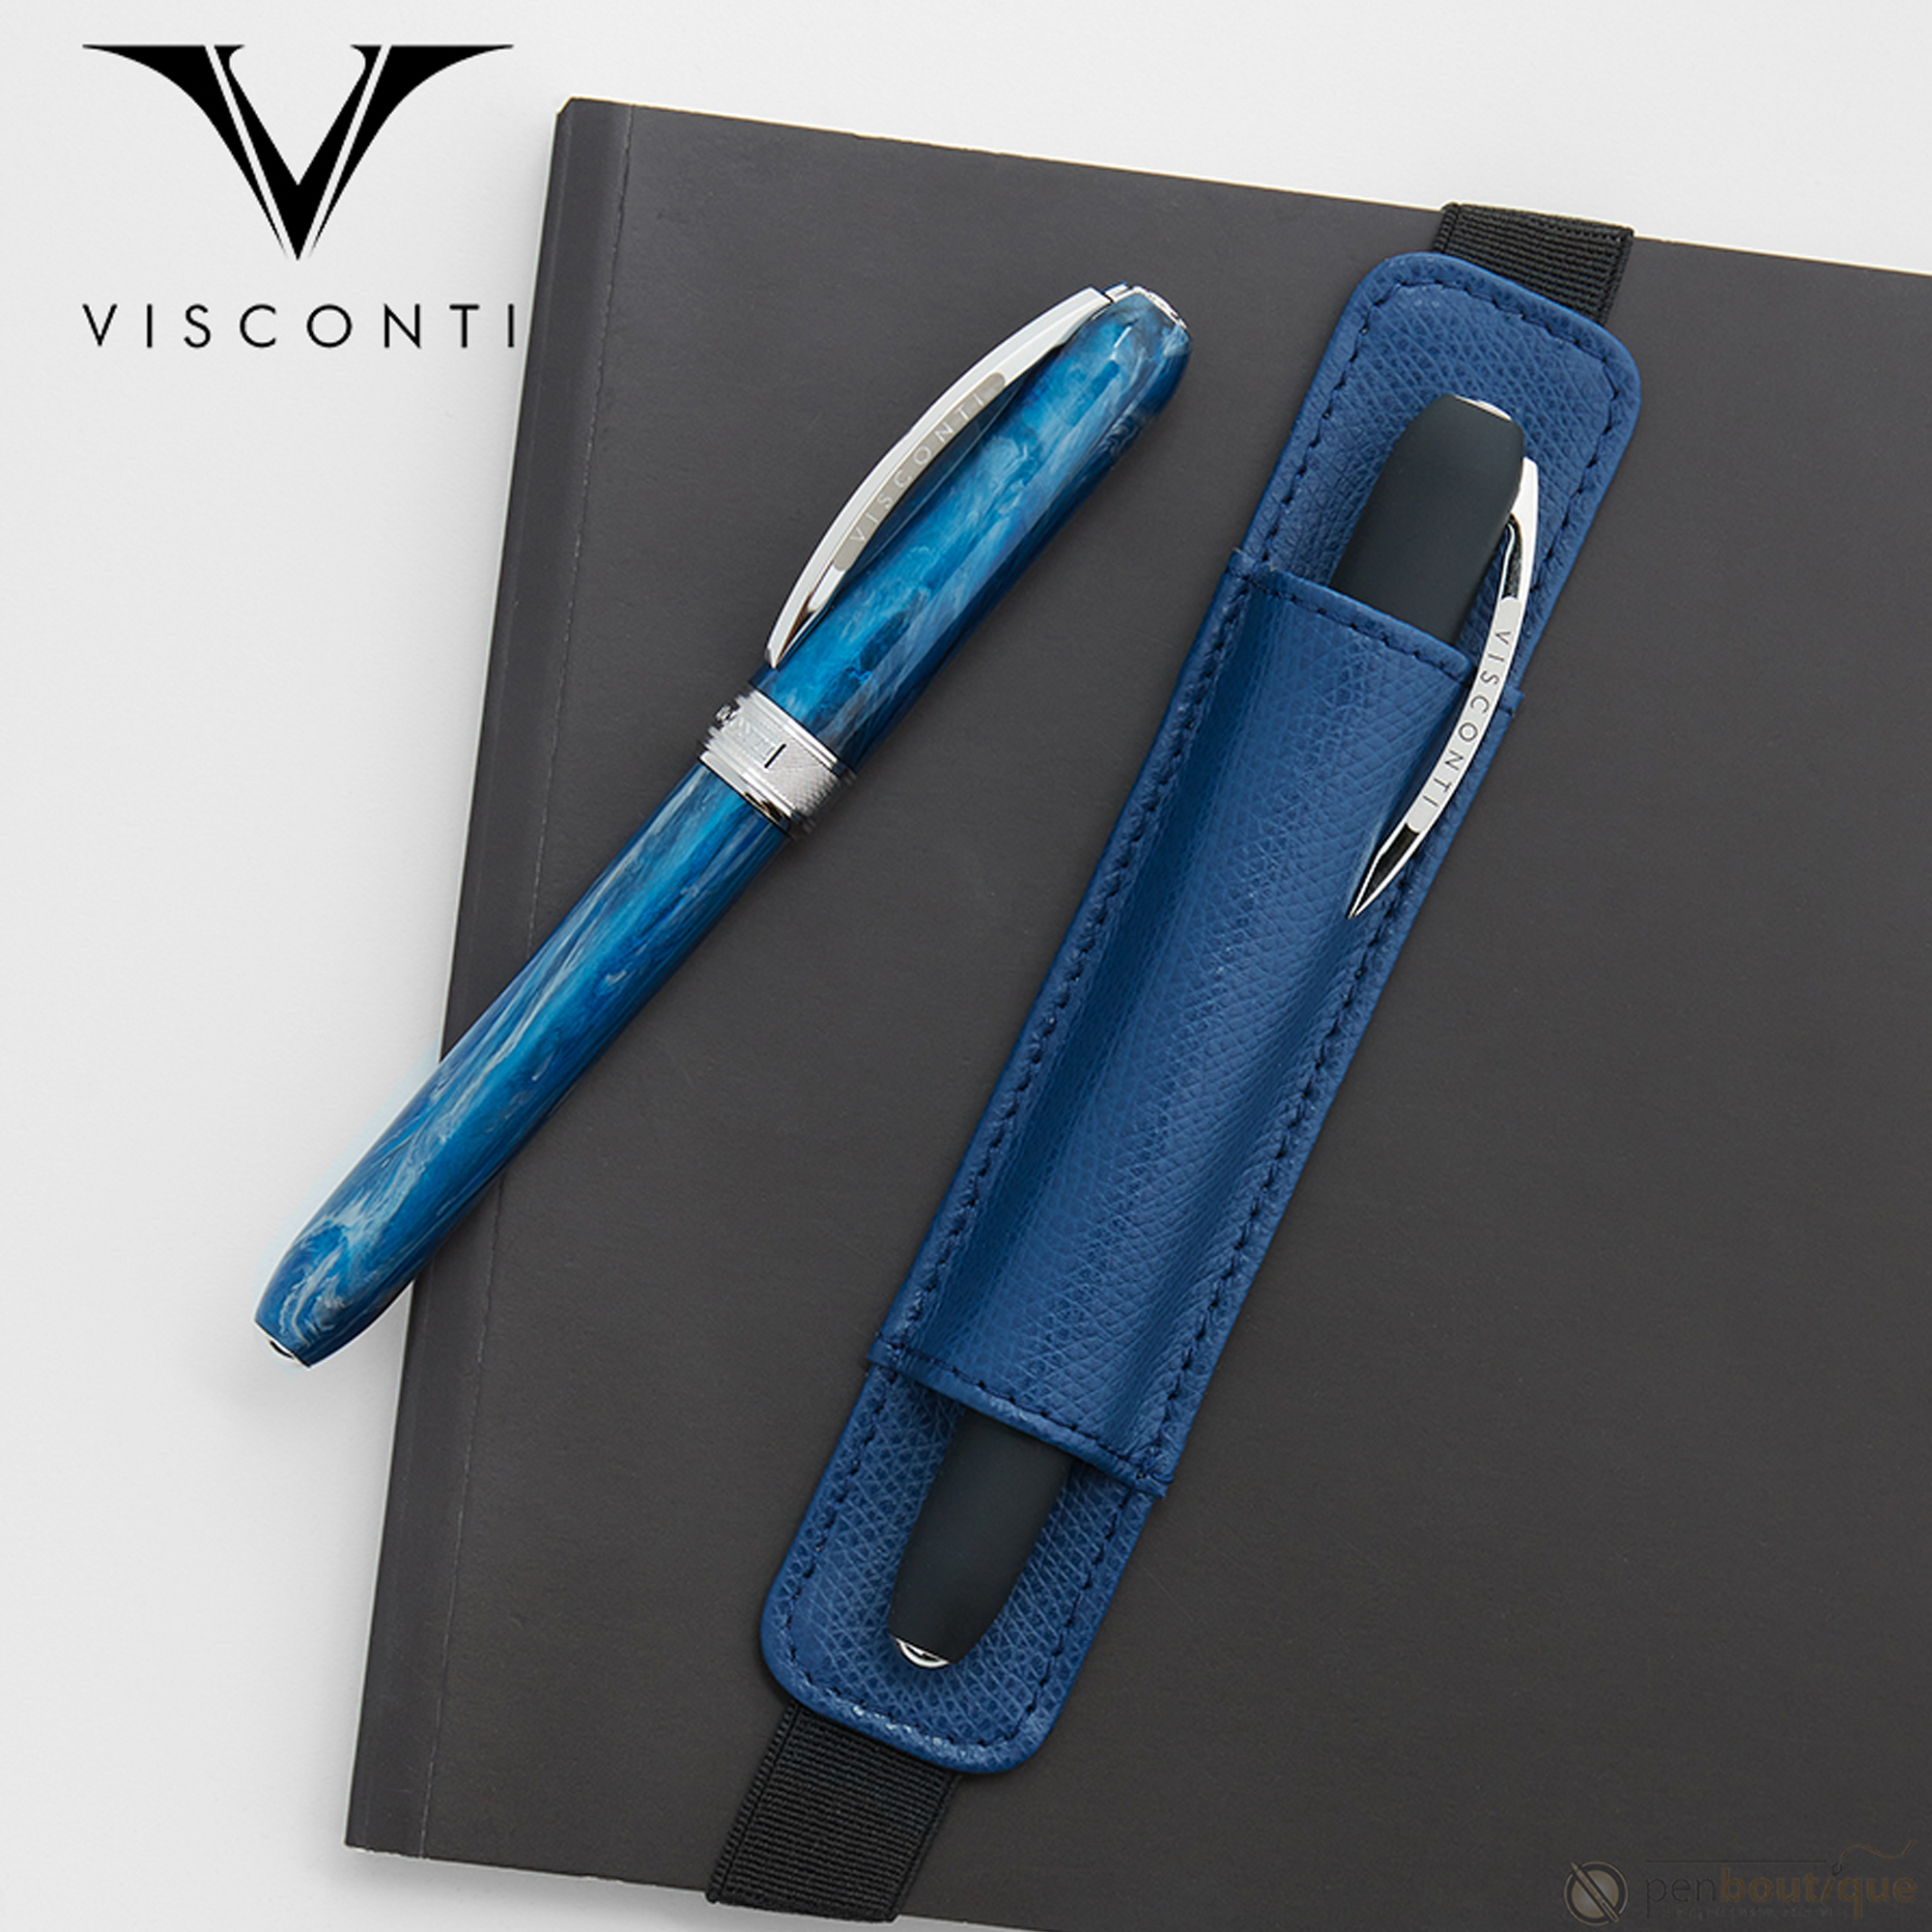 Visconti VSCT One Pen Holder - Pen Boutique Ltd